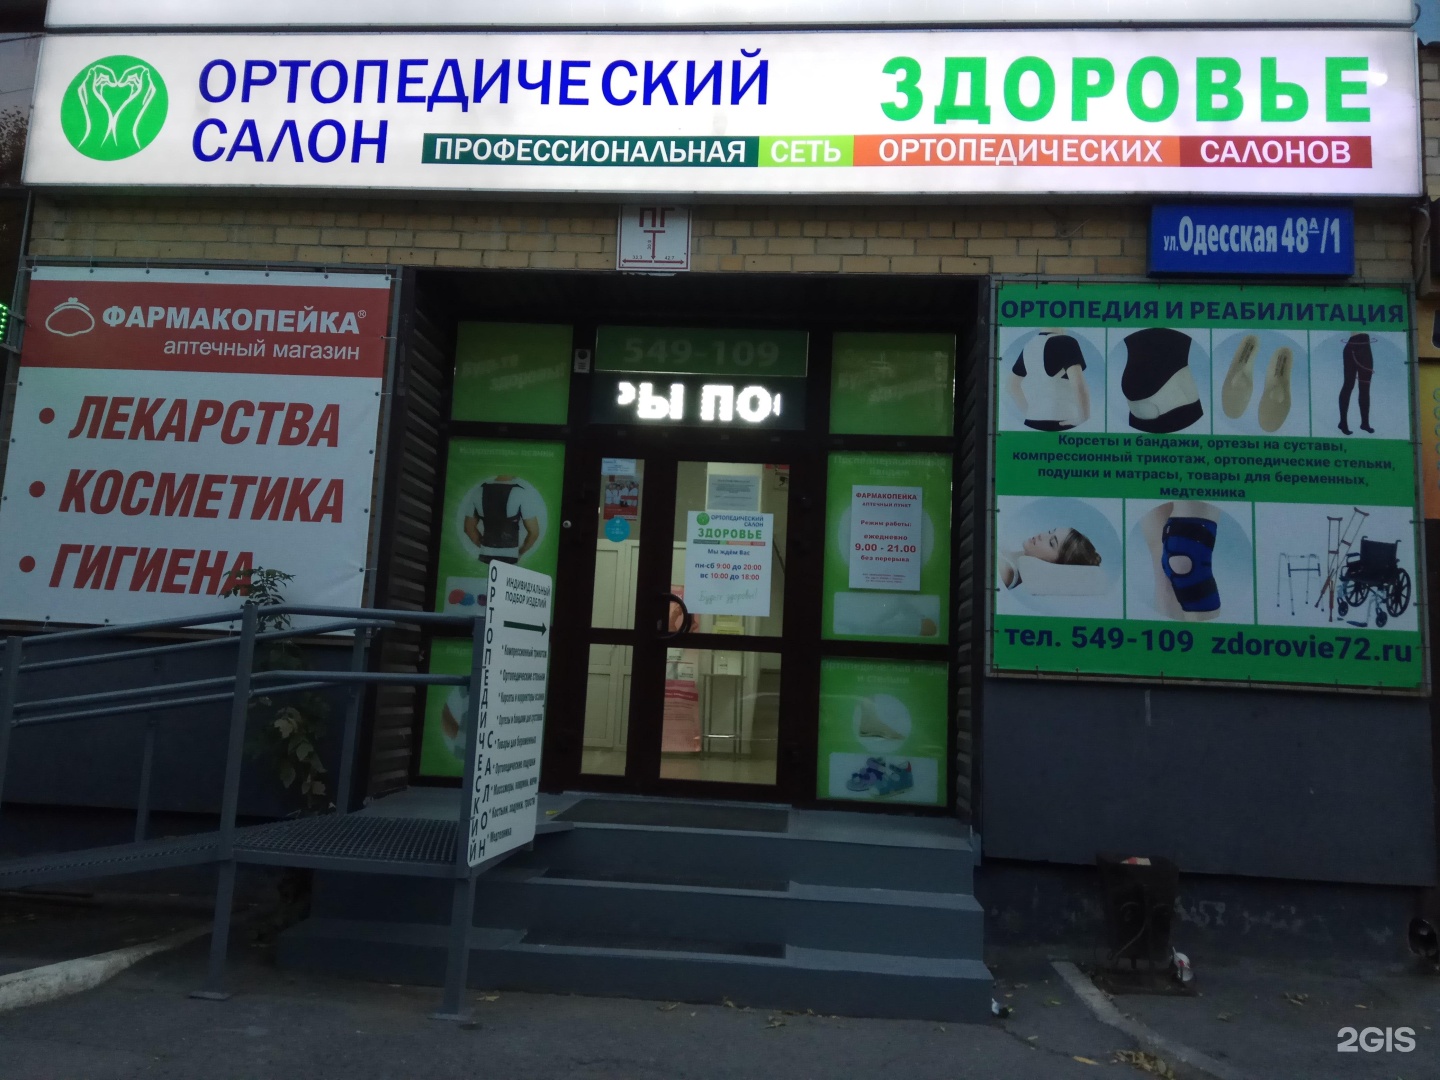 Центр здоровье ортопед. Ортопедический салон Тюмень. Здоровье Тюмень. Тюмень Одесская 48а здоровье. Академия здоровья ортопедический салон.